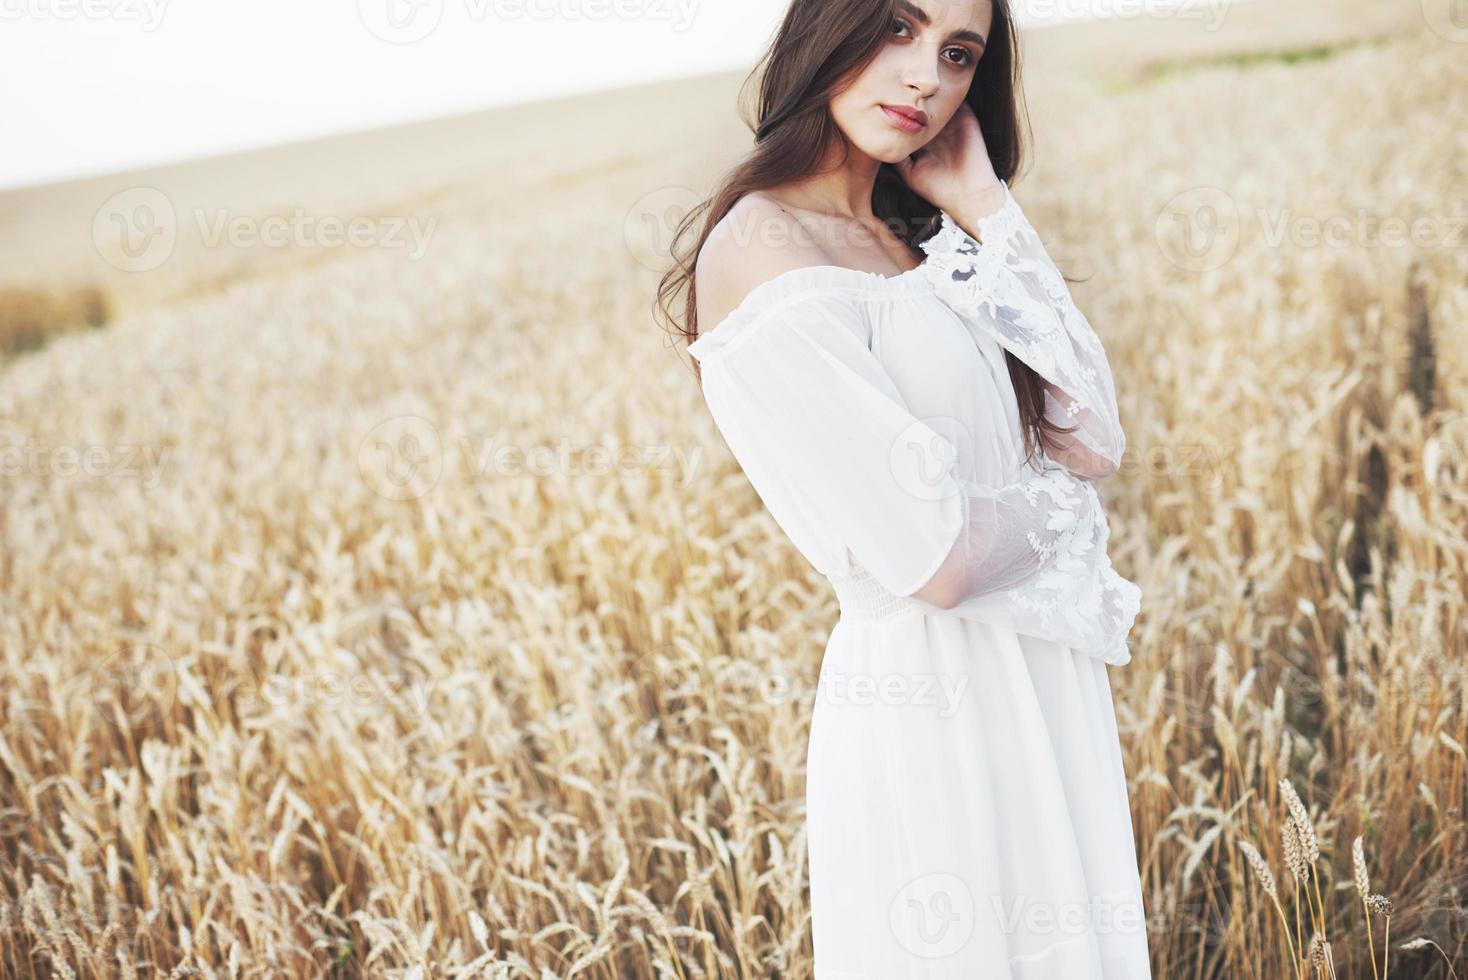 Sensible joven vestida de blanco posando en un campo de trigo dorado foto